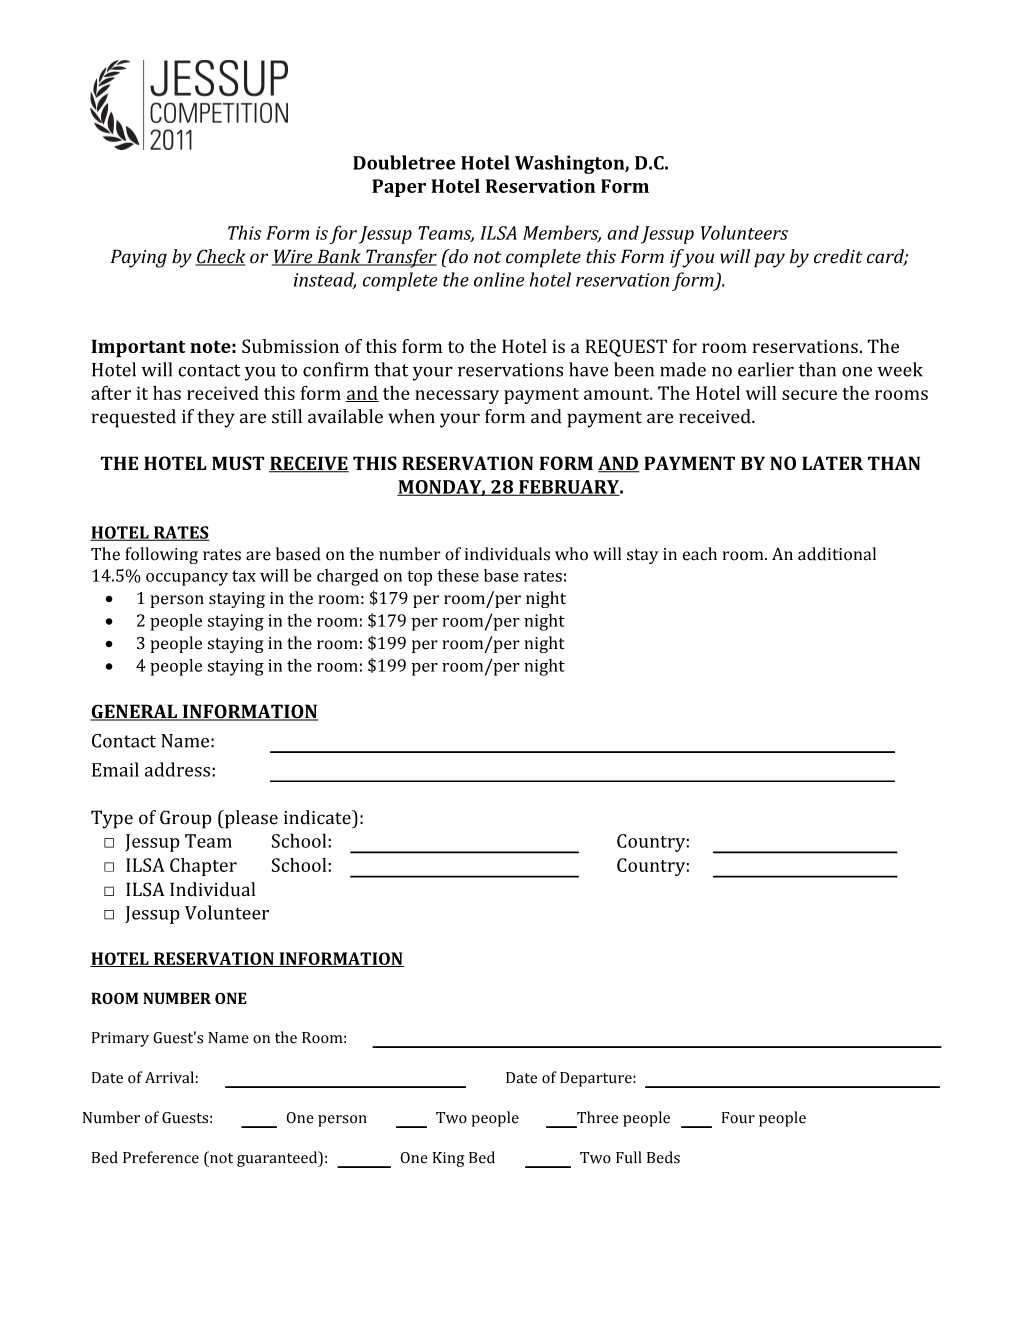 Paper Hotel Reservation Form